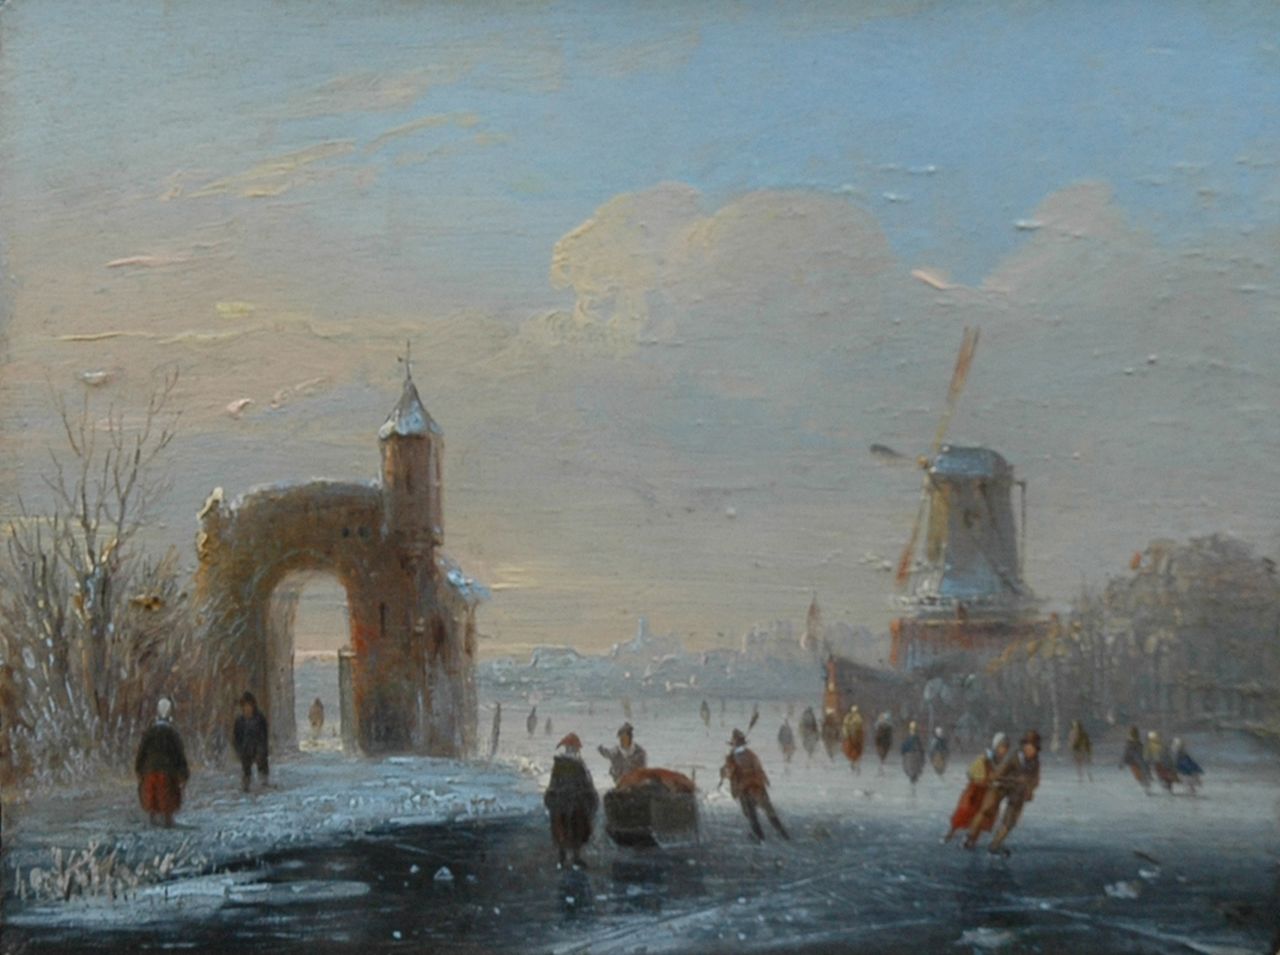 Stok J. van der | Jacobus van der Stok, A frozen river with skaters, oil on panel 11.3 x 14.9 cm